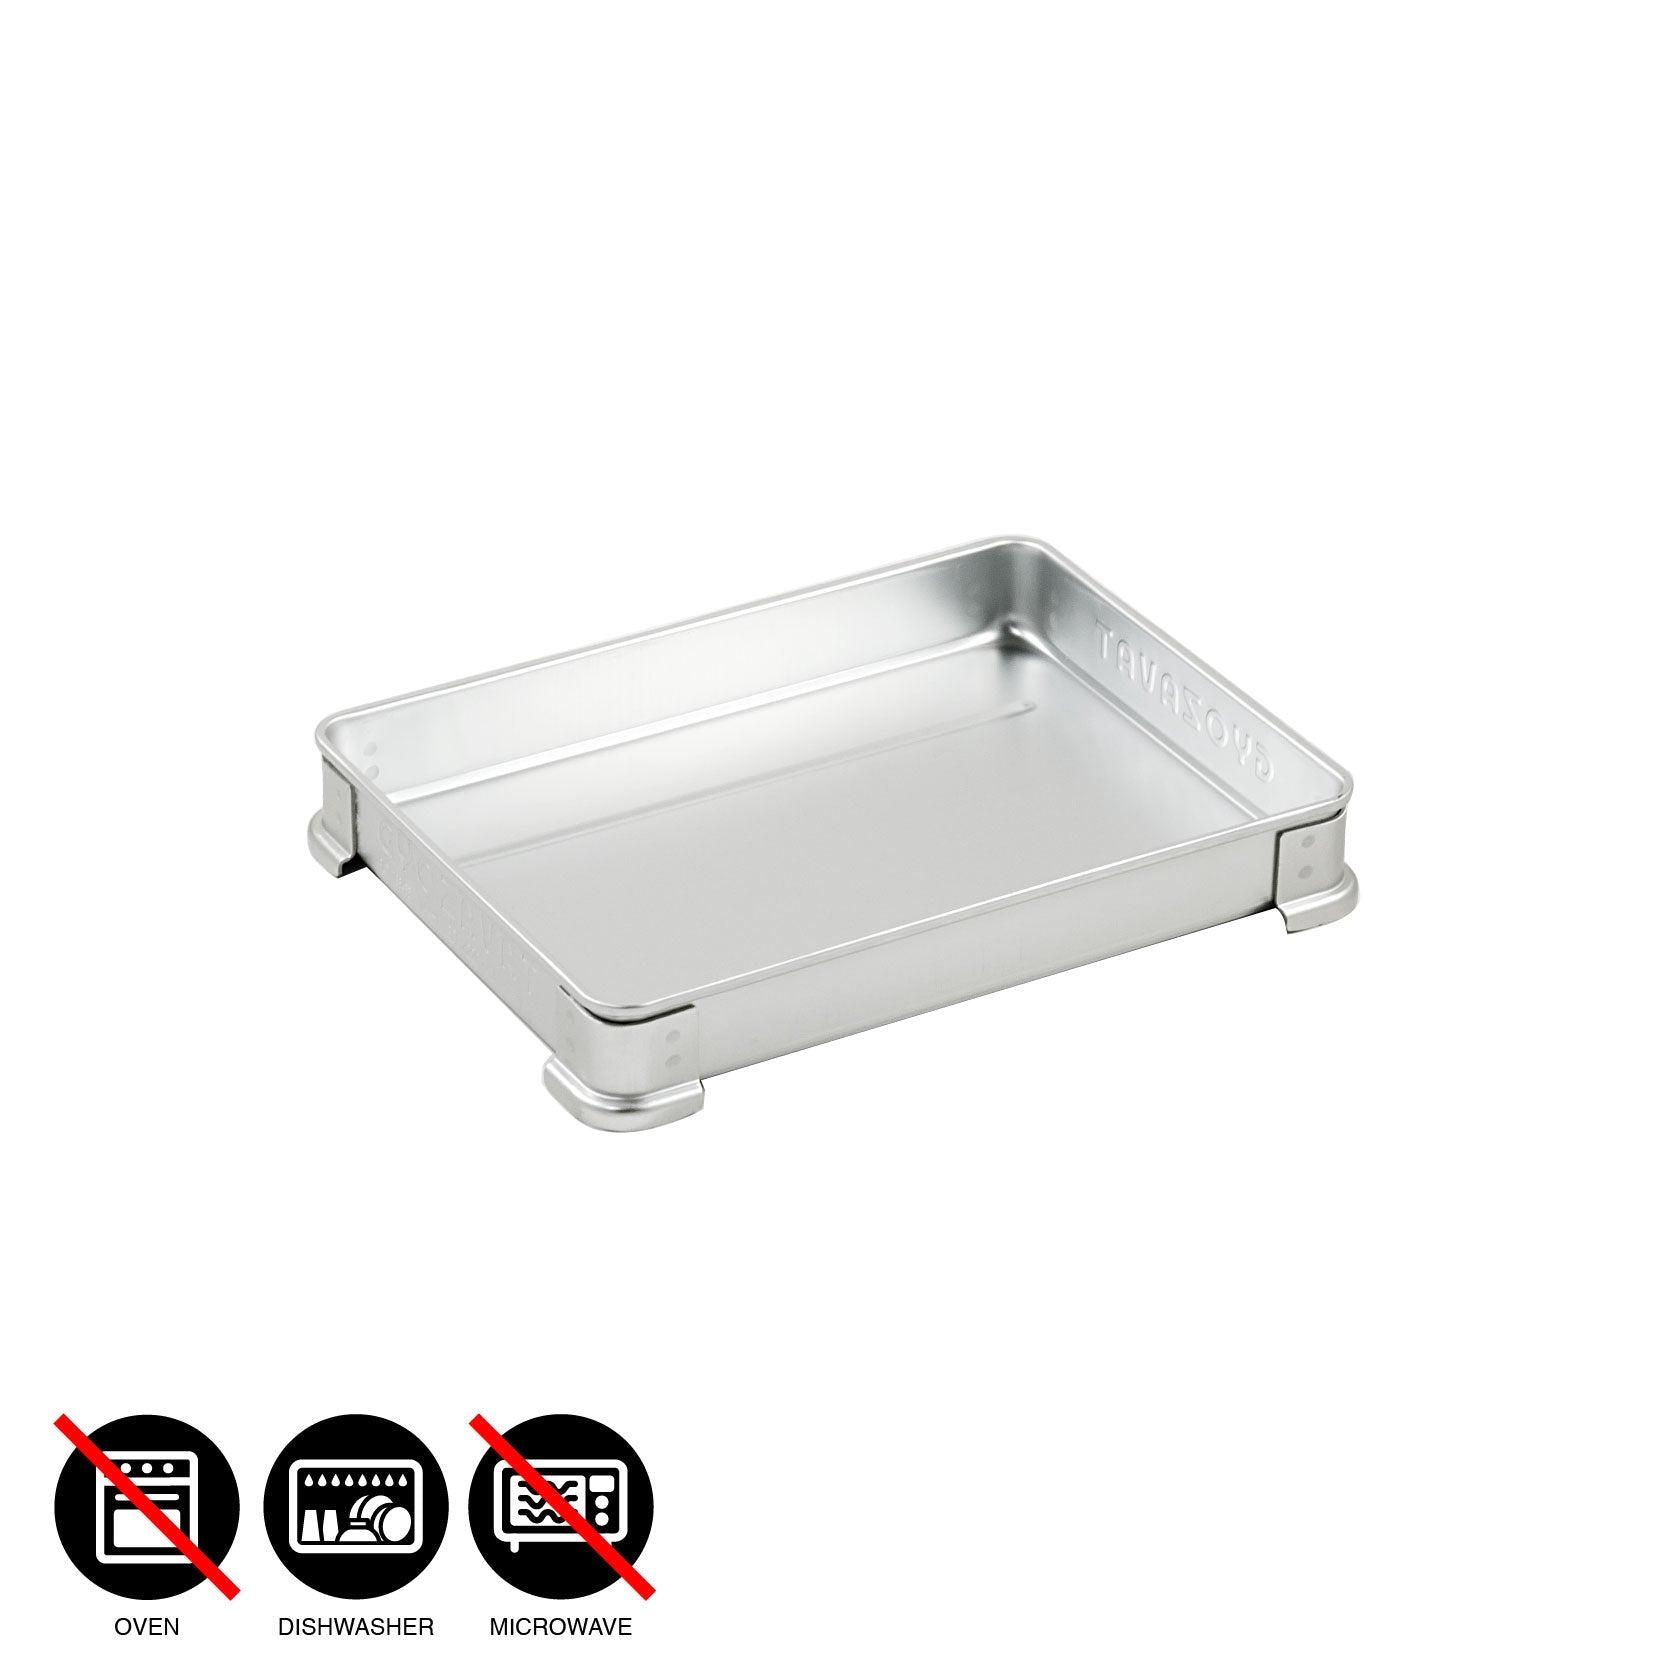 NAKAO aluminum tray for Gyoza / S - L